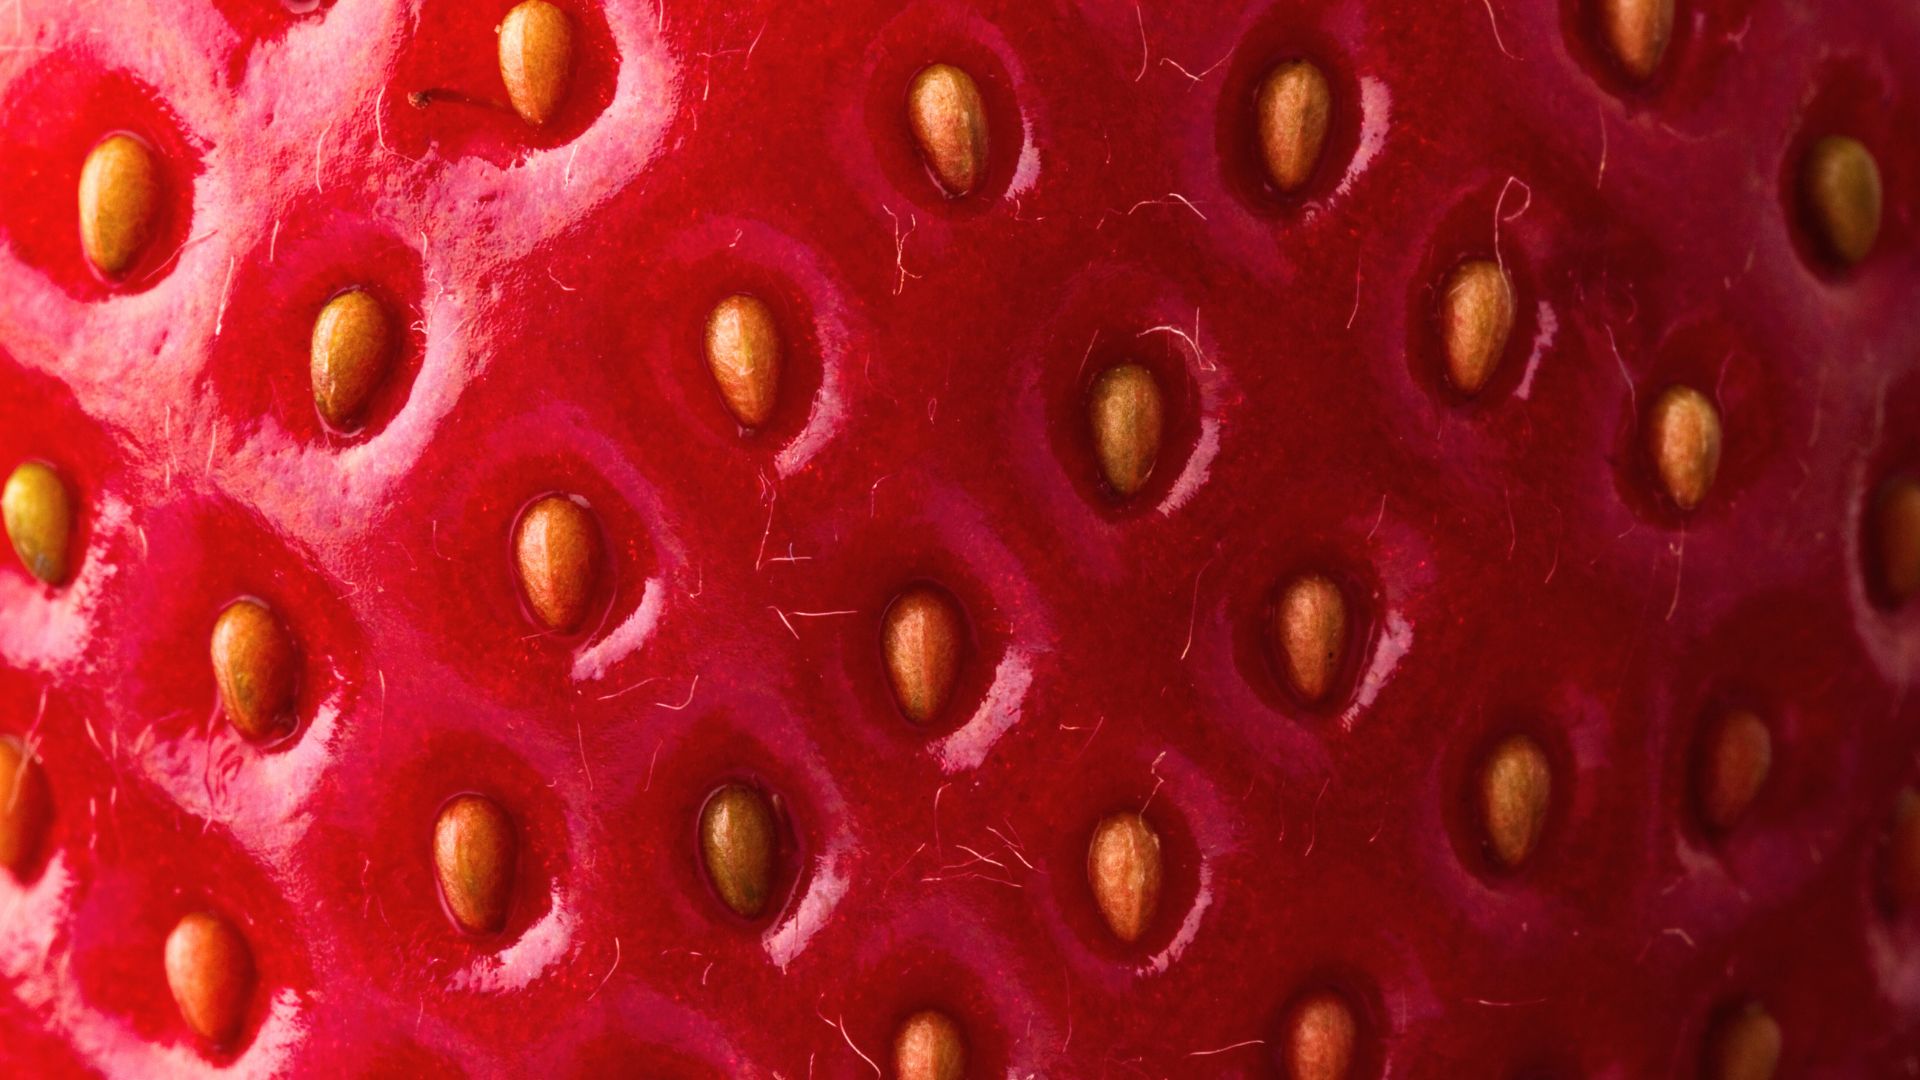 Kératose pilaire ou peau de fraise : comment s'en débarrasser ? - CLEM